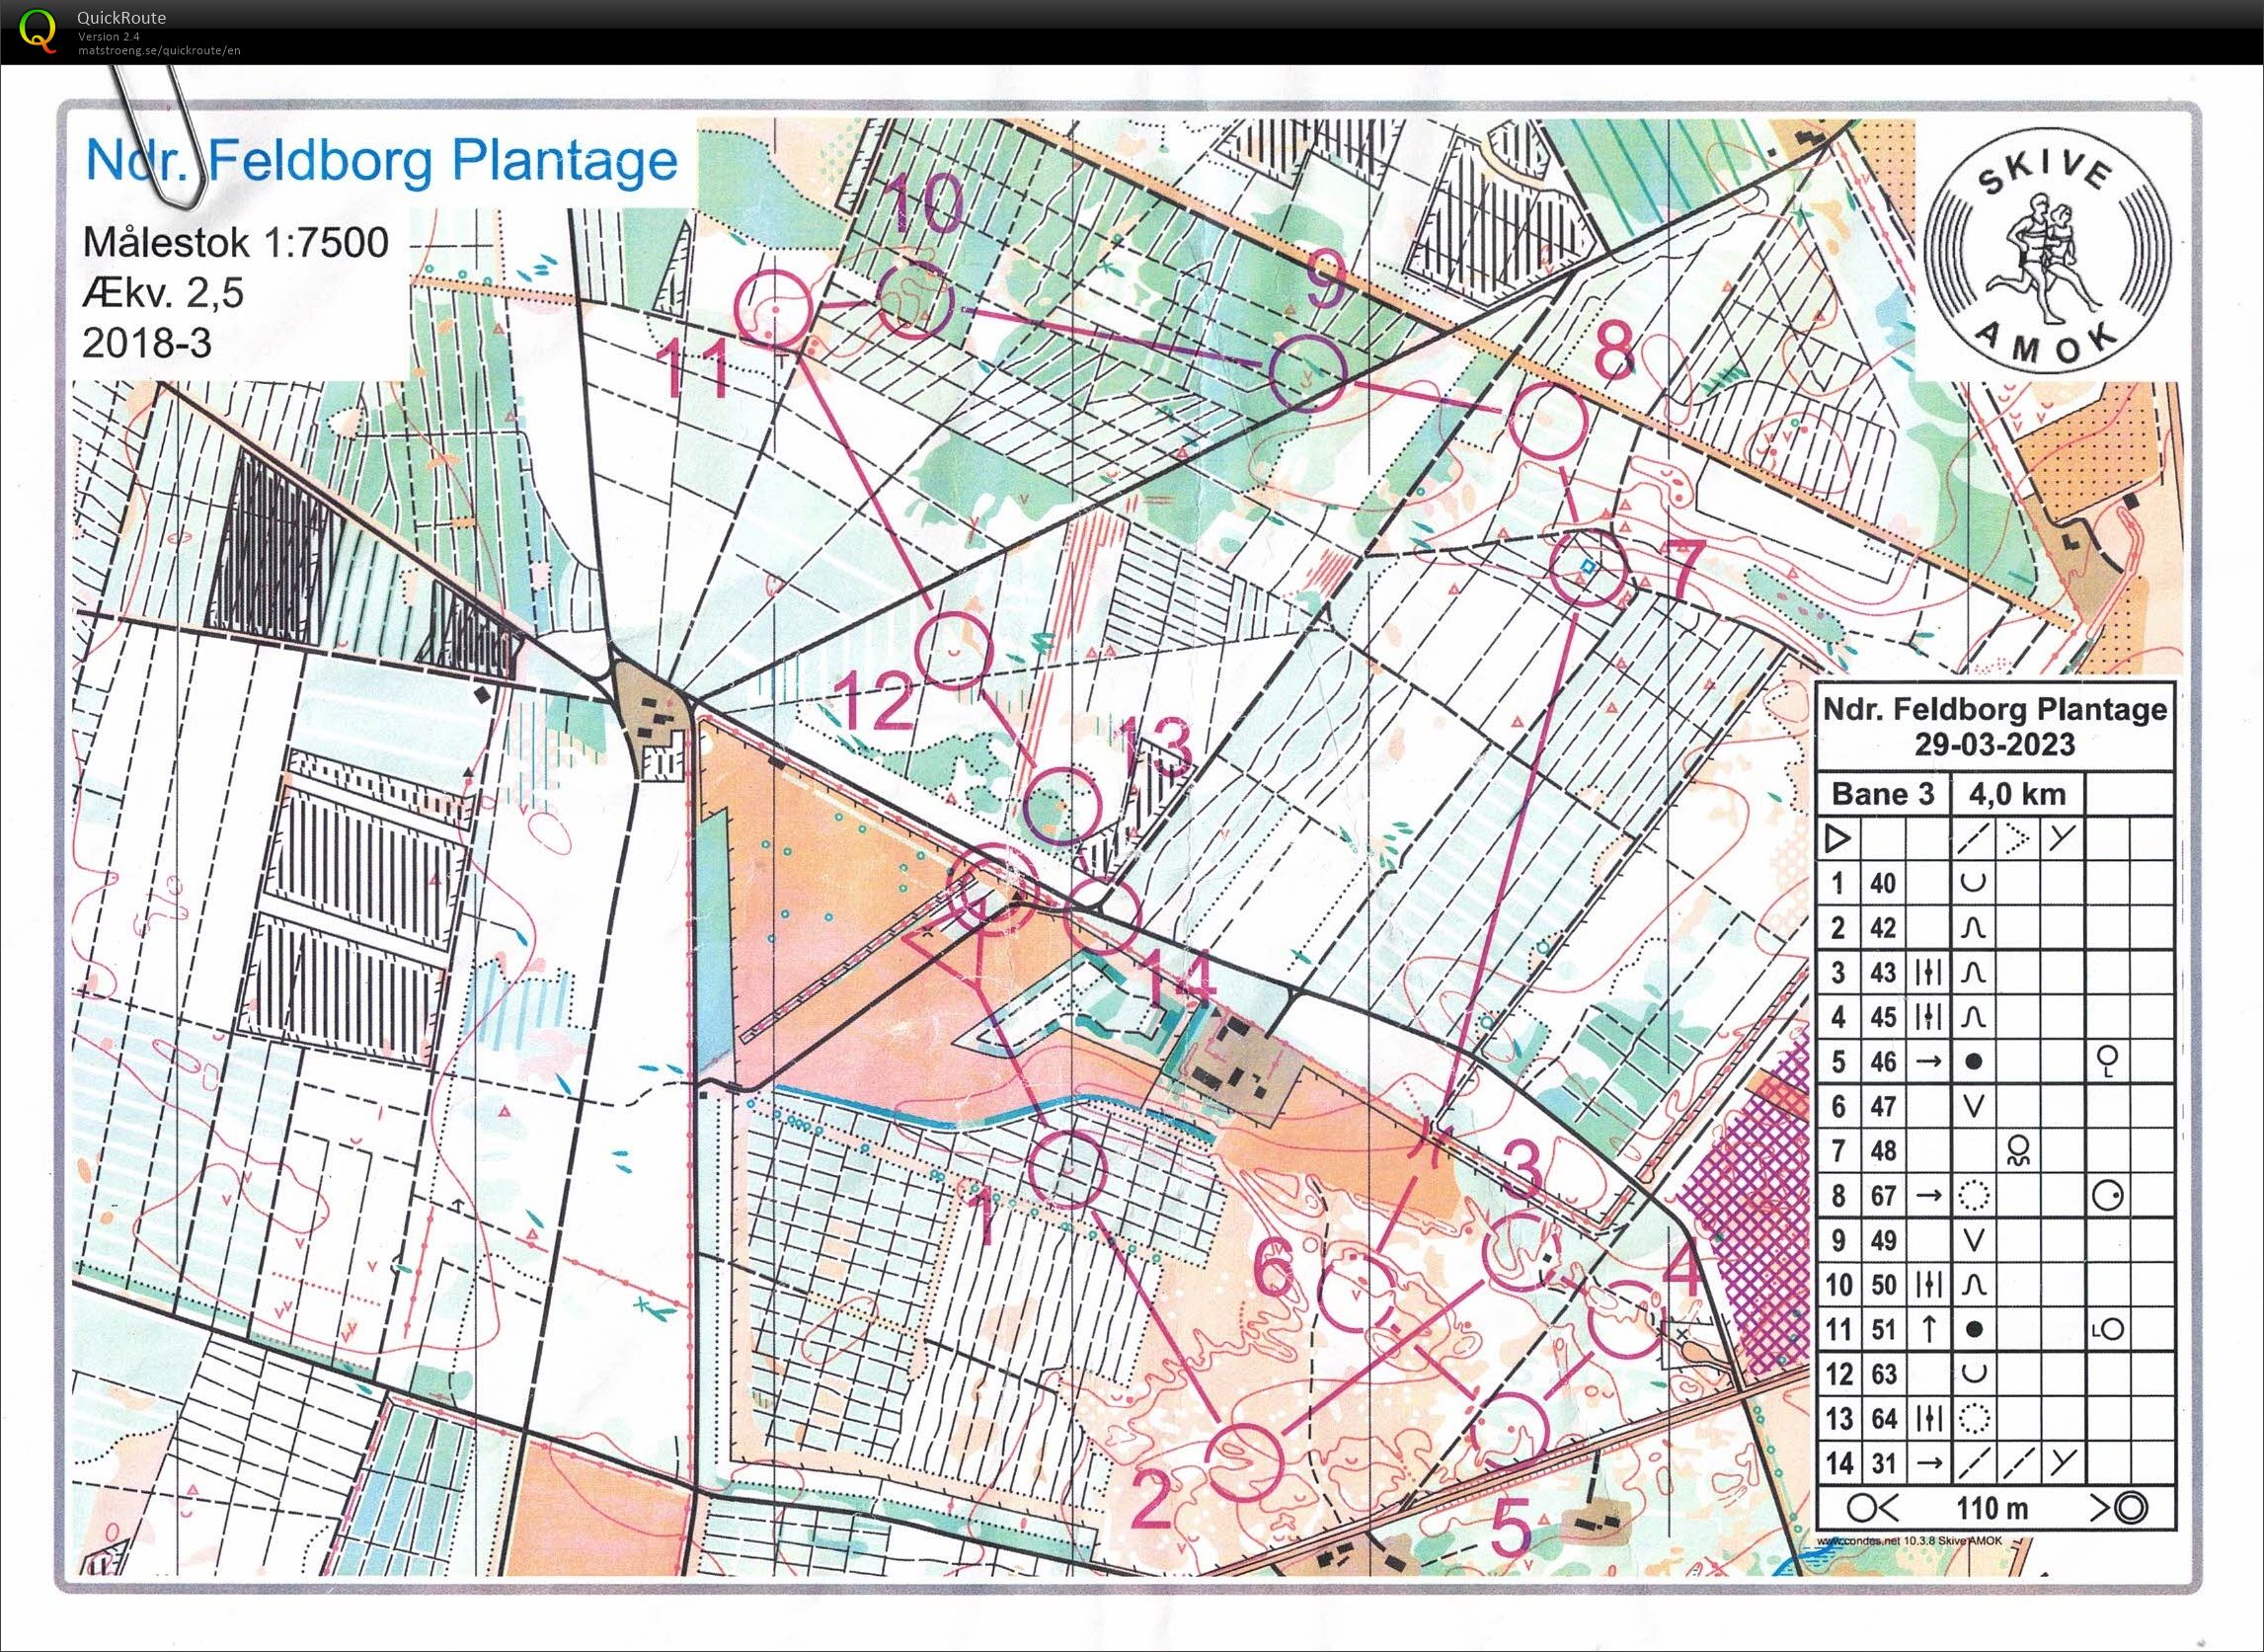 Ndr. Feldborg Plantage, Bane 3, Pia Gade, 290323 (2023-03-29)